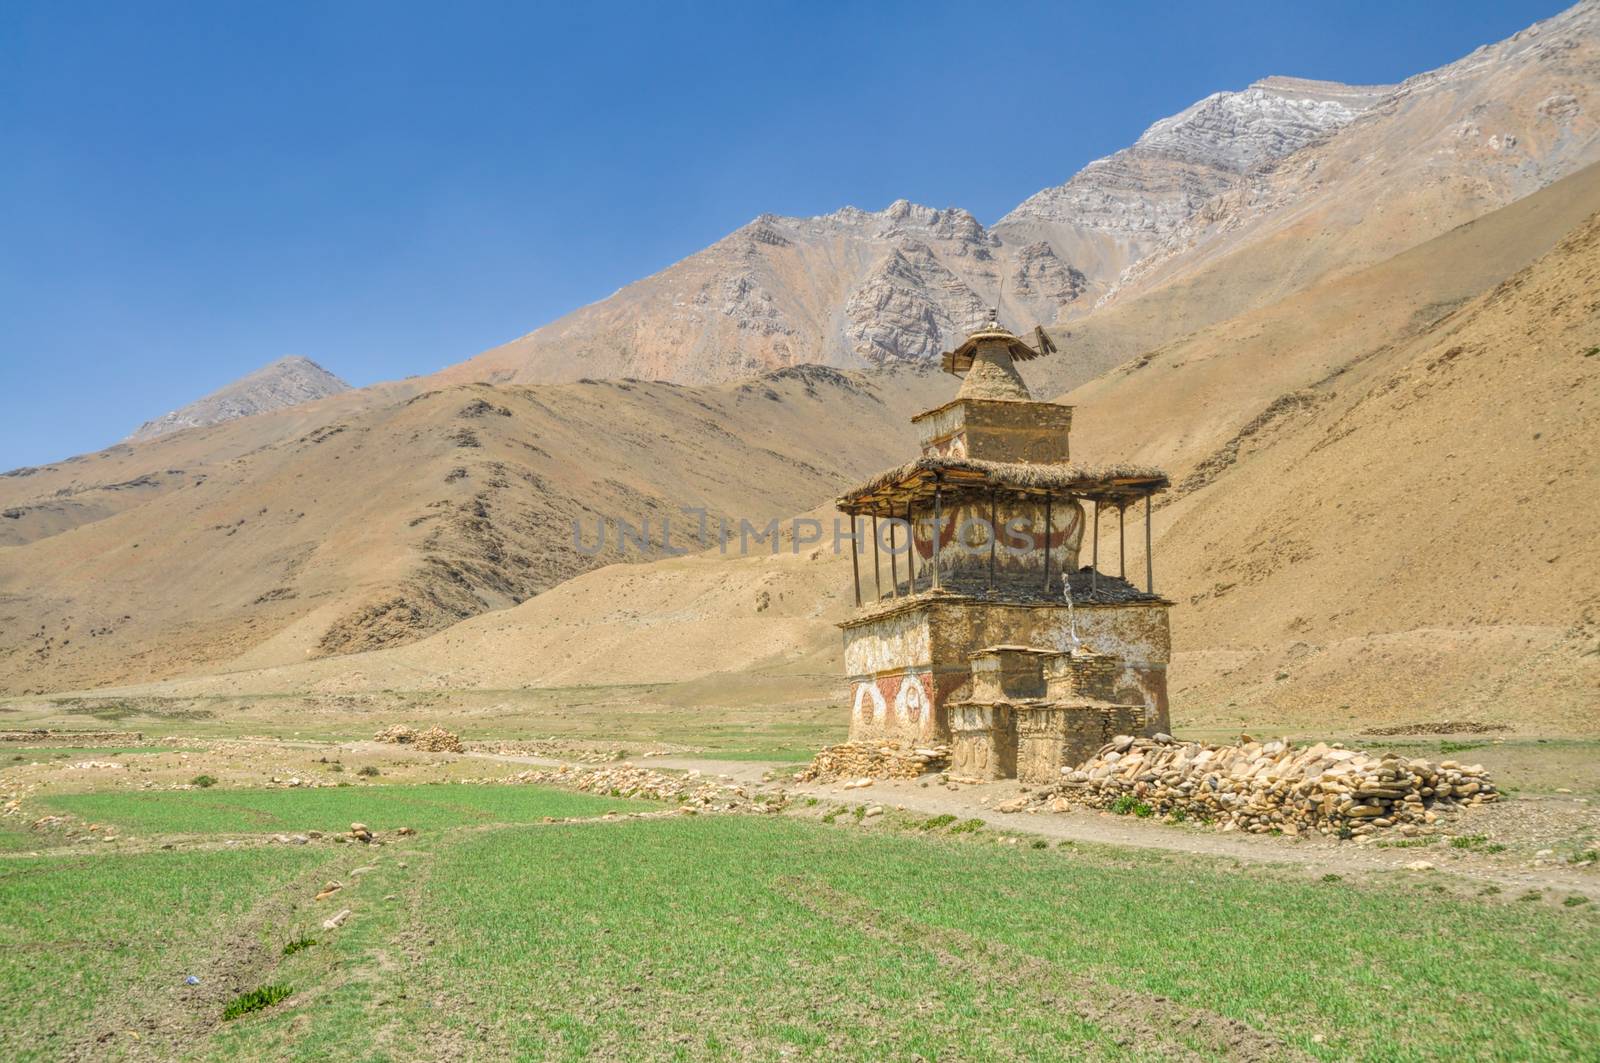 Old shrine in Dolpo region in Nepal